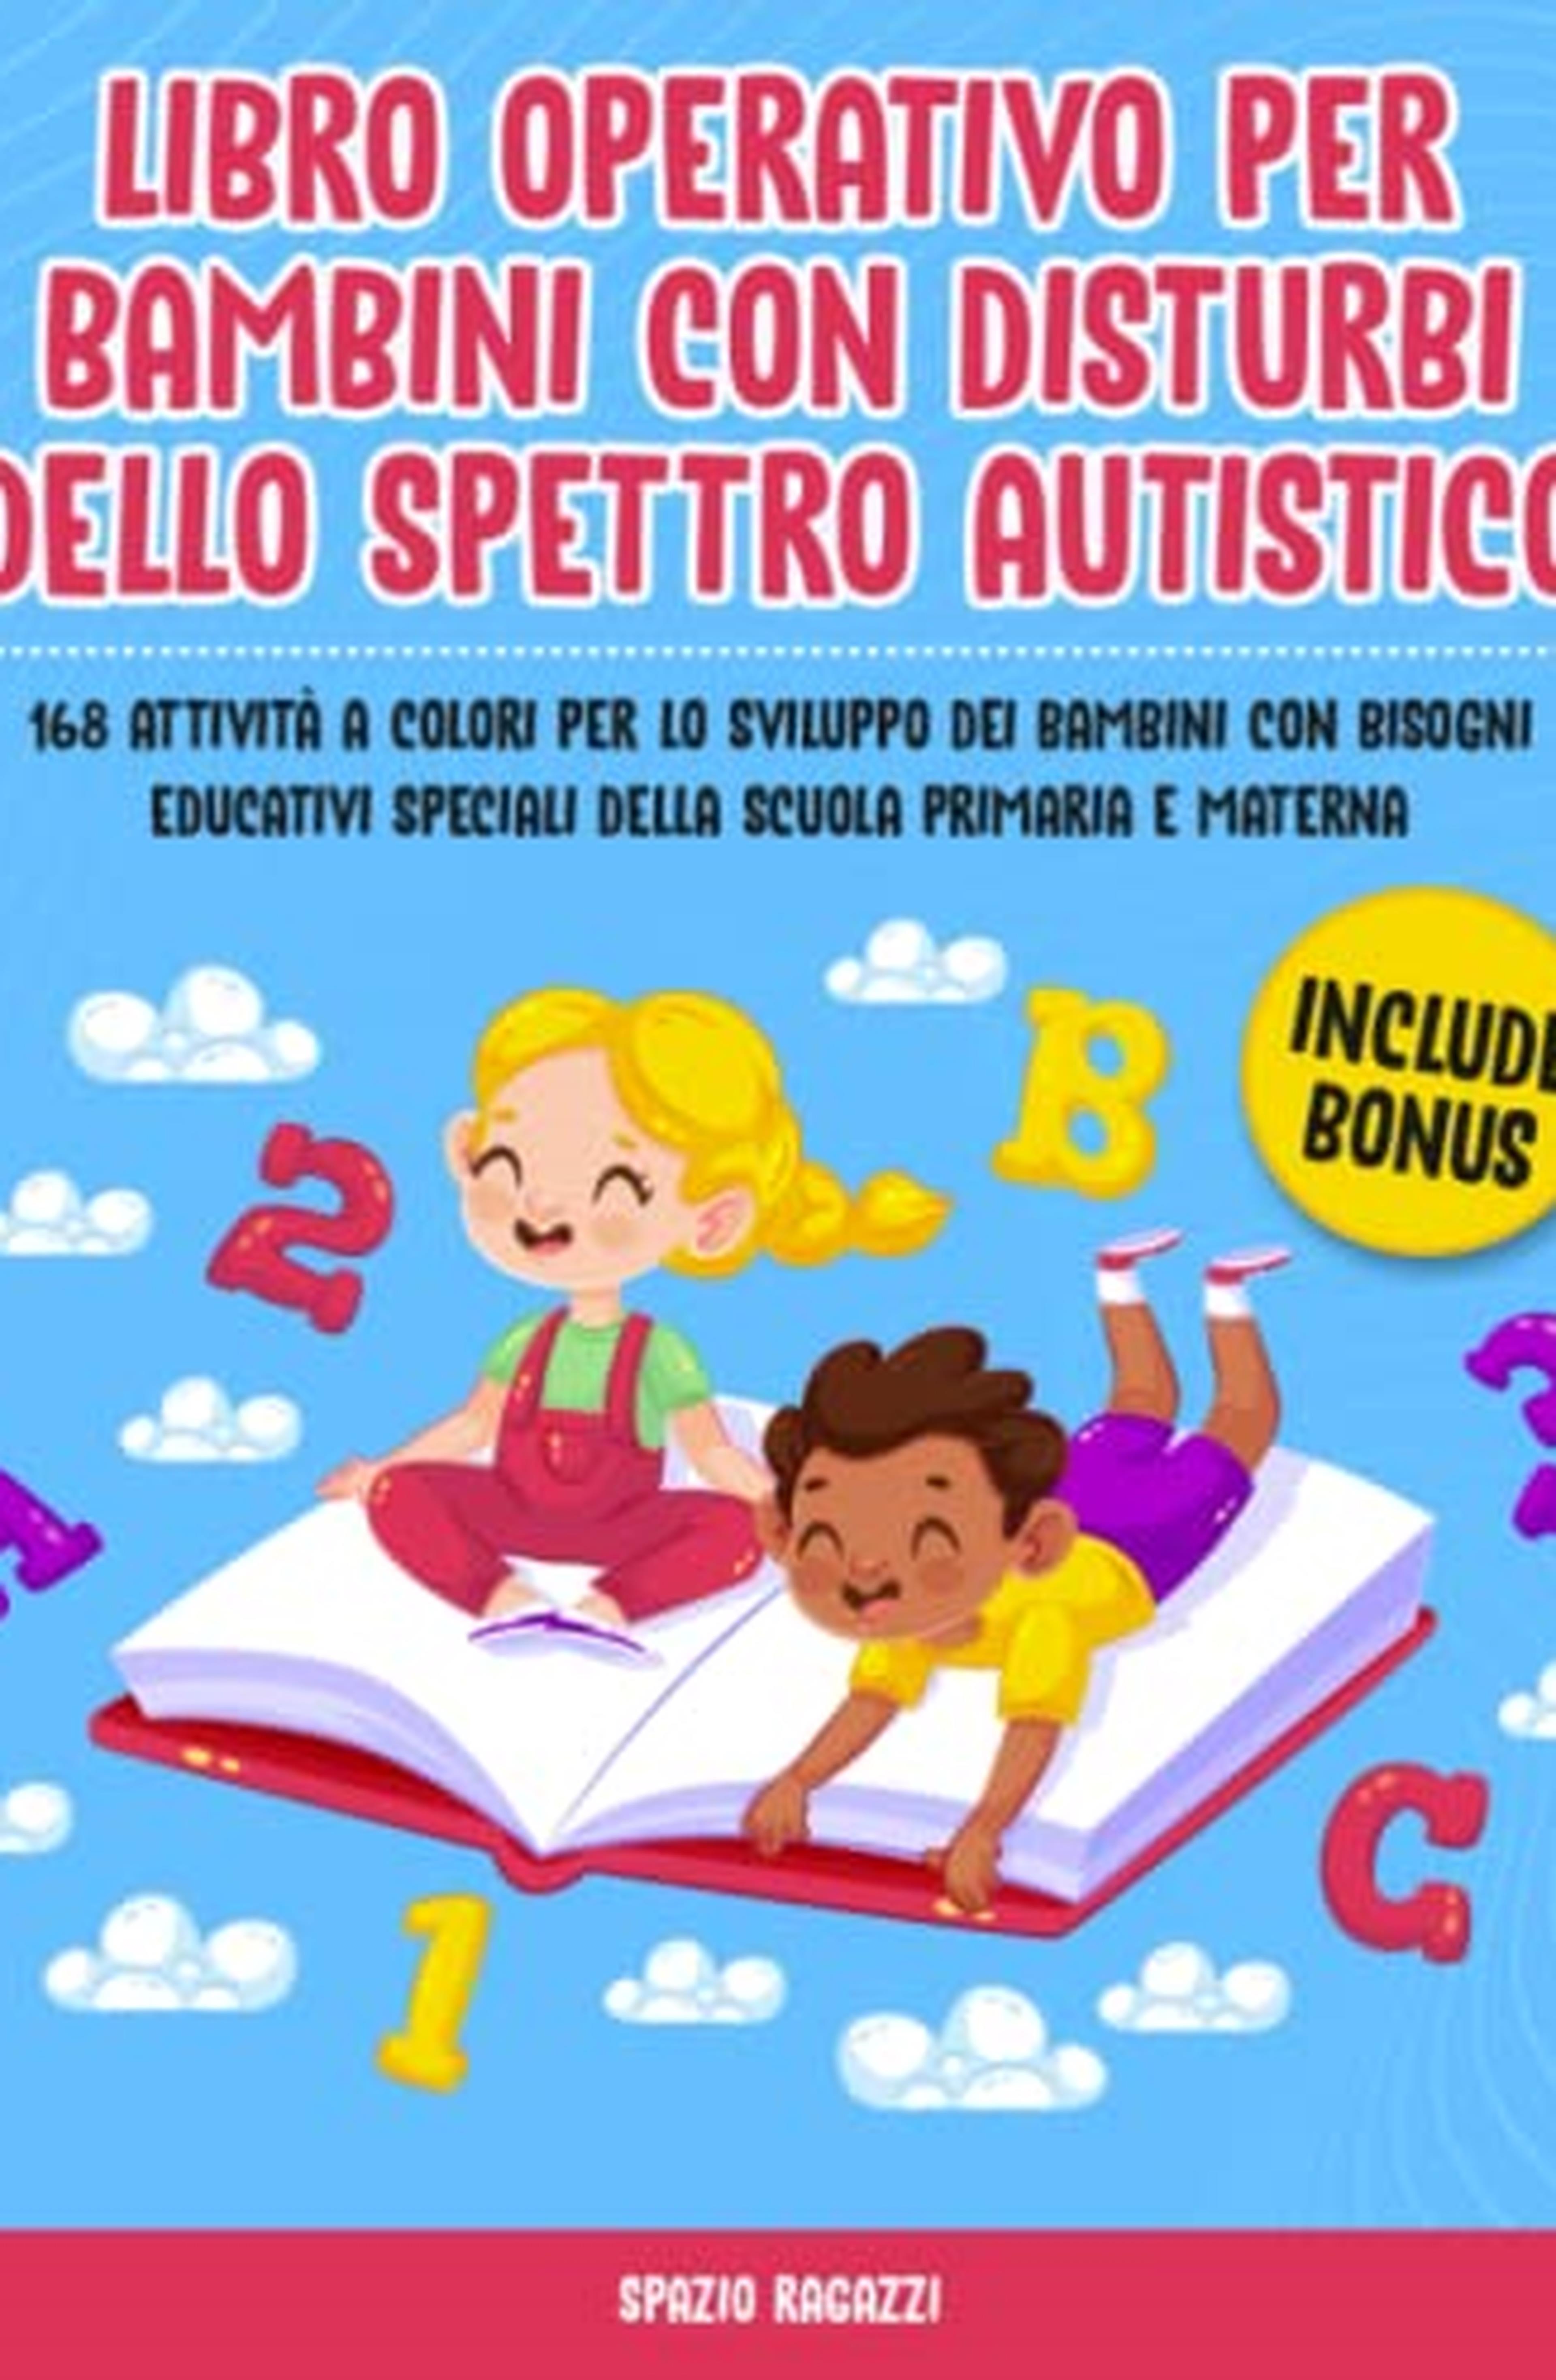 Libro Operativo per Bambini con Disturbi dello Spettro Autistico: 168 Attività a Colori per lo Sviluppo dei Bambini con Bisogni Educativi Speciali della Scuola Primaria e Materna | Include Bonus